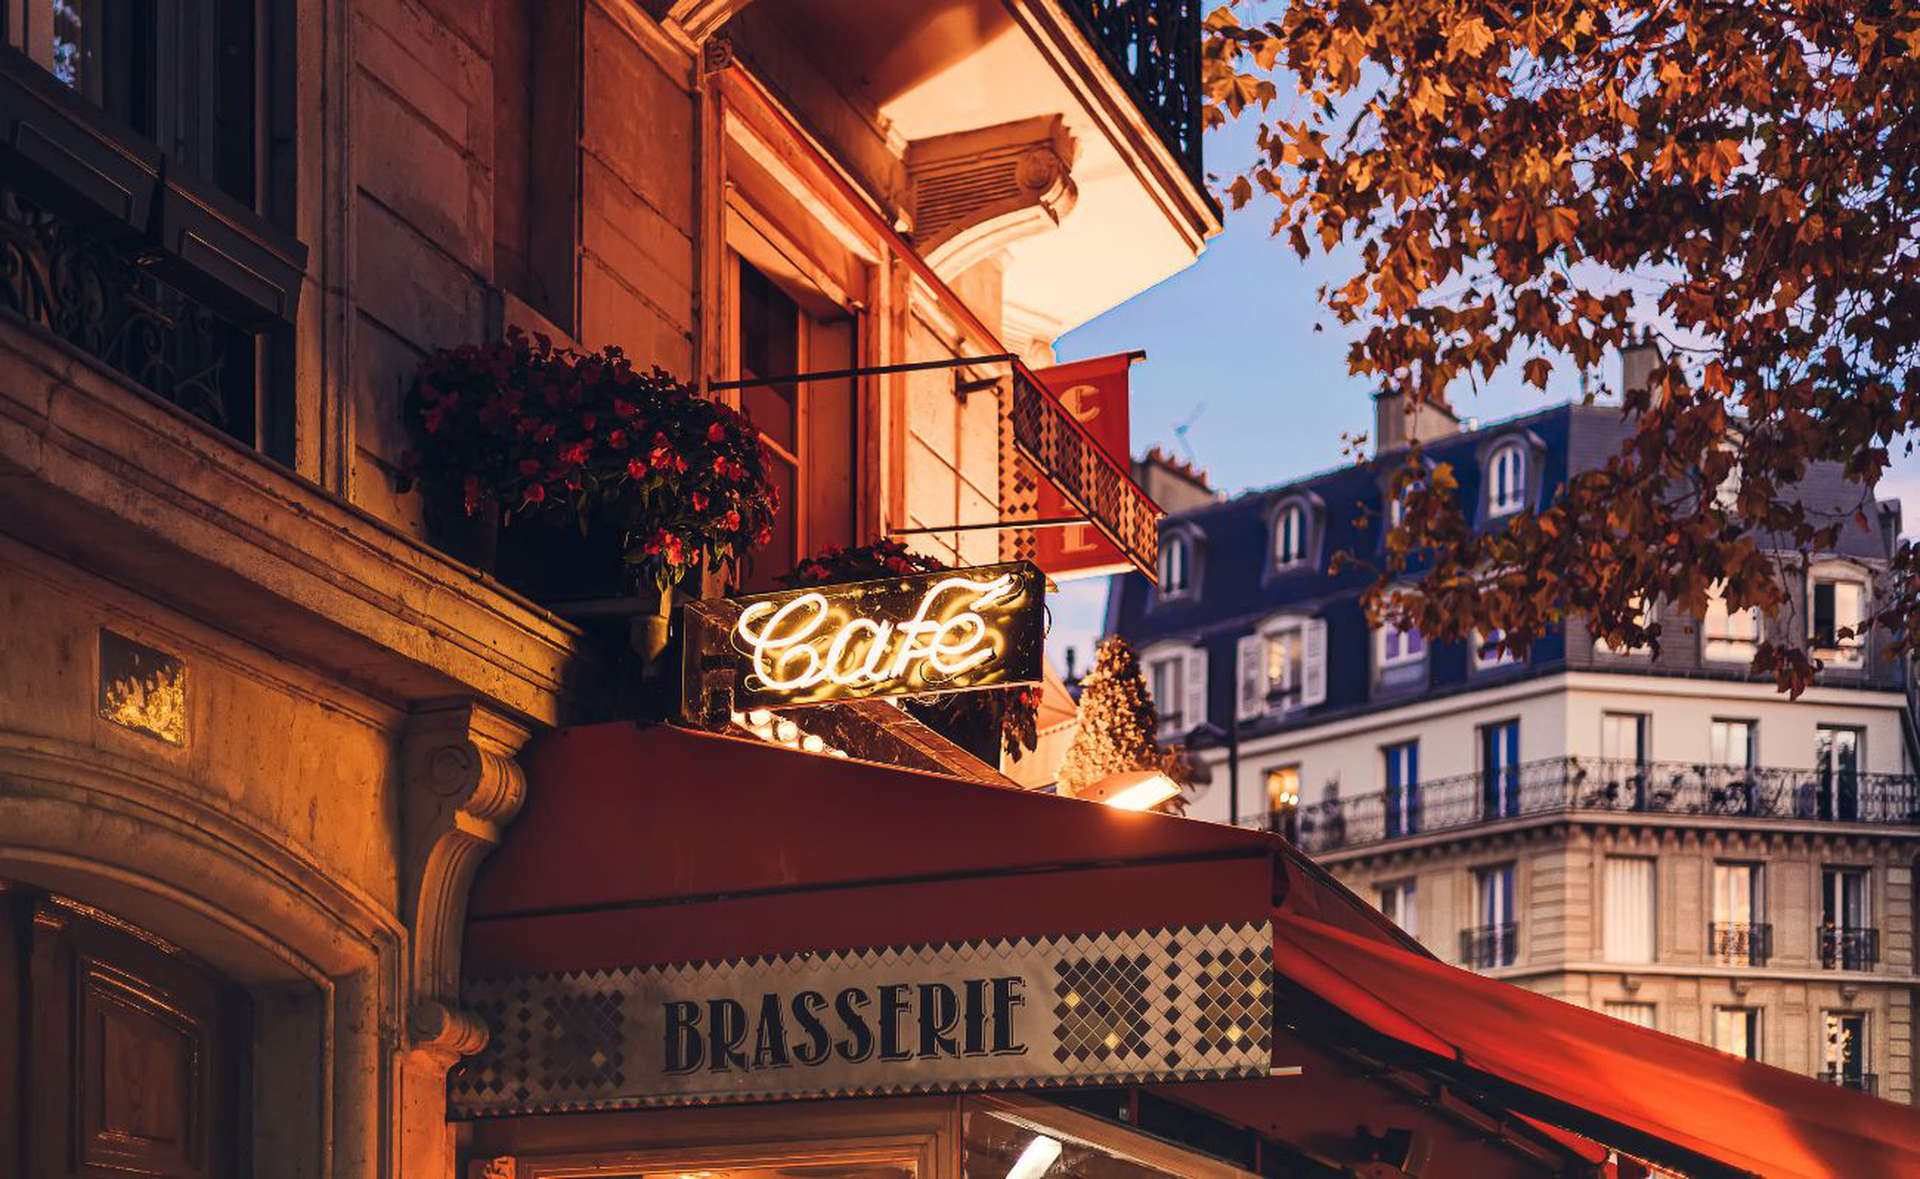 Francuska brasserie w Paryżu 